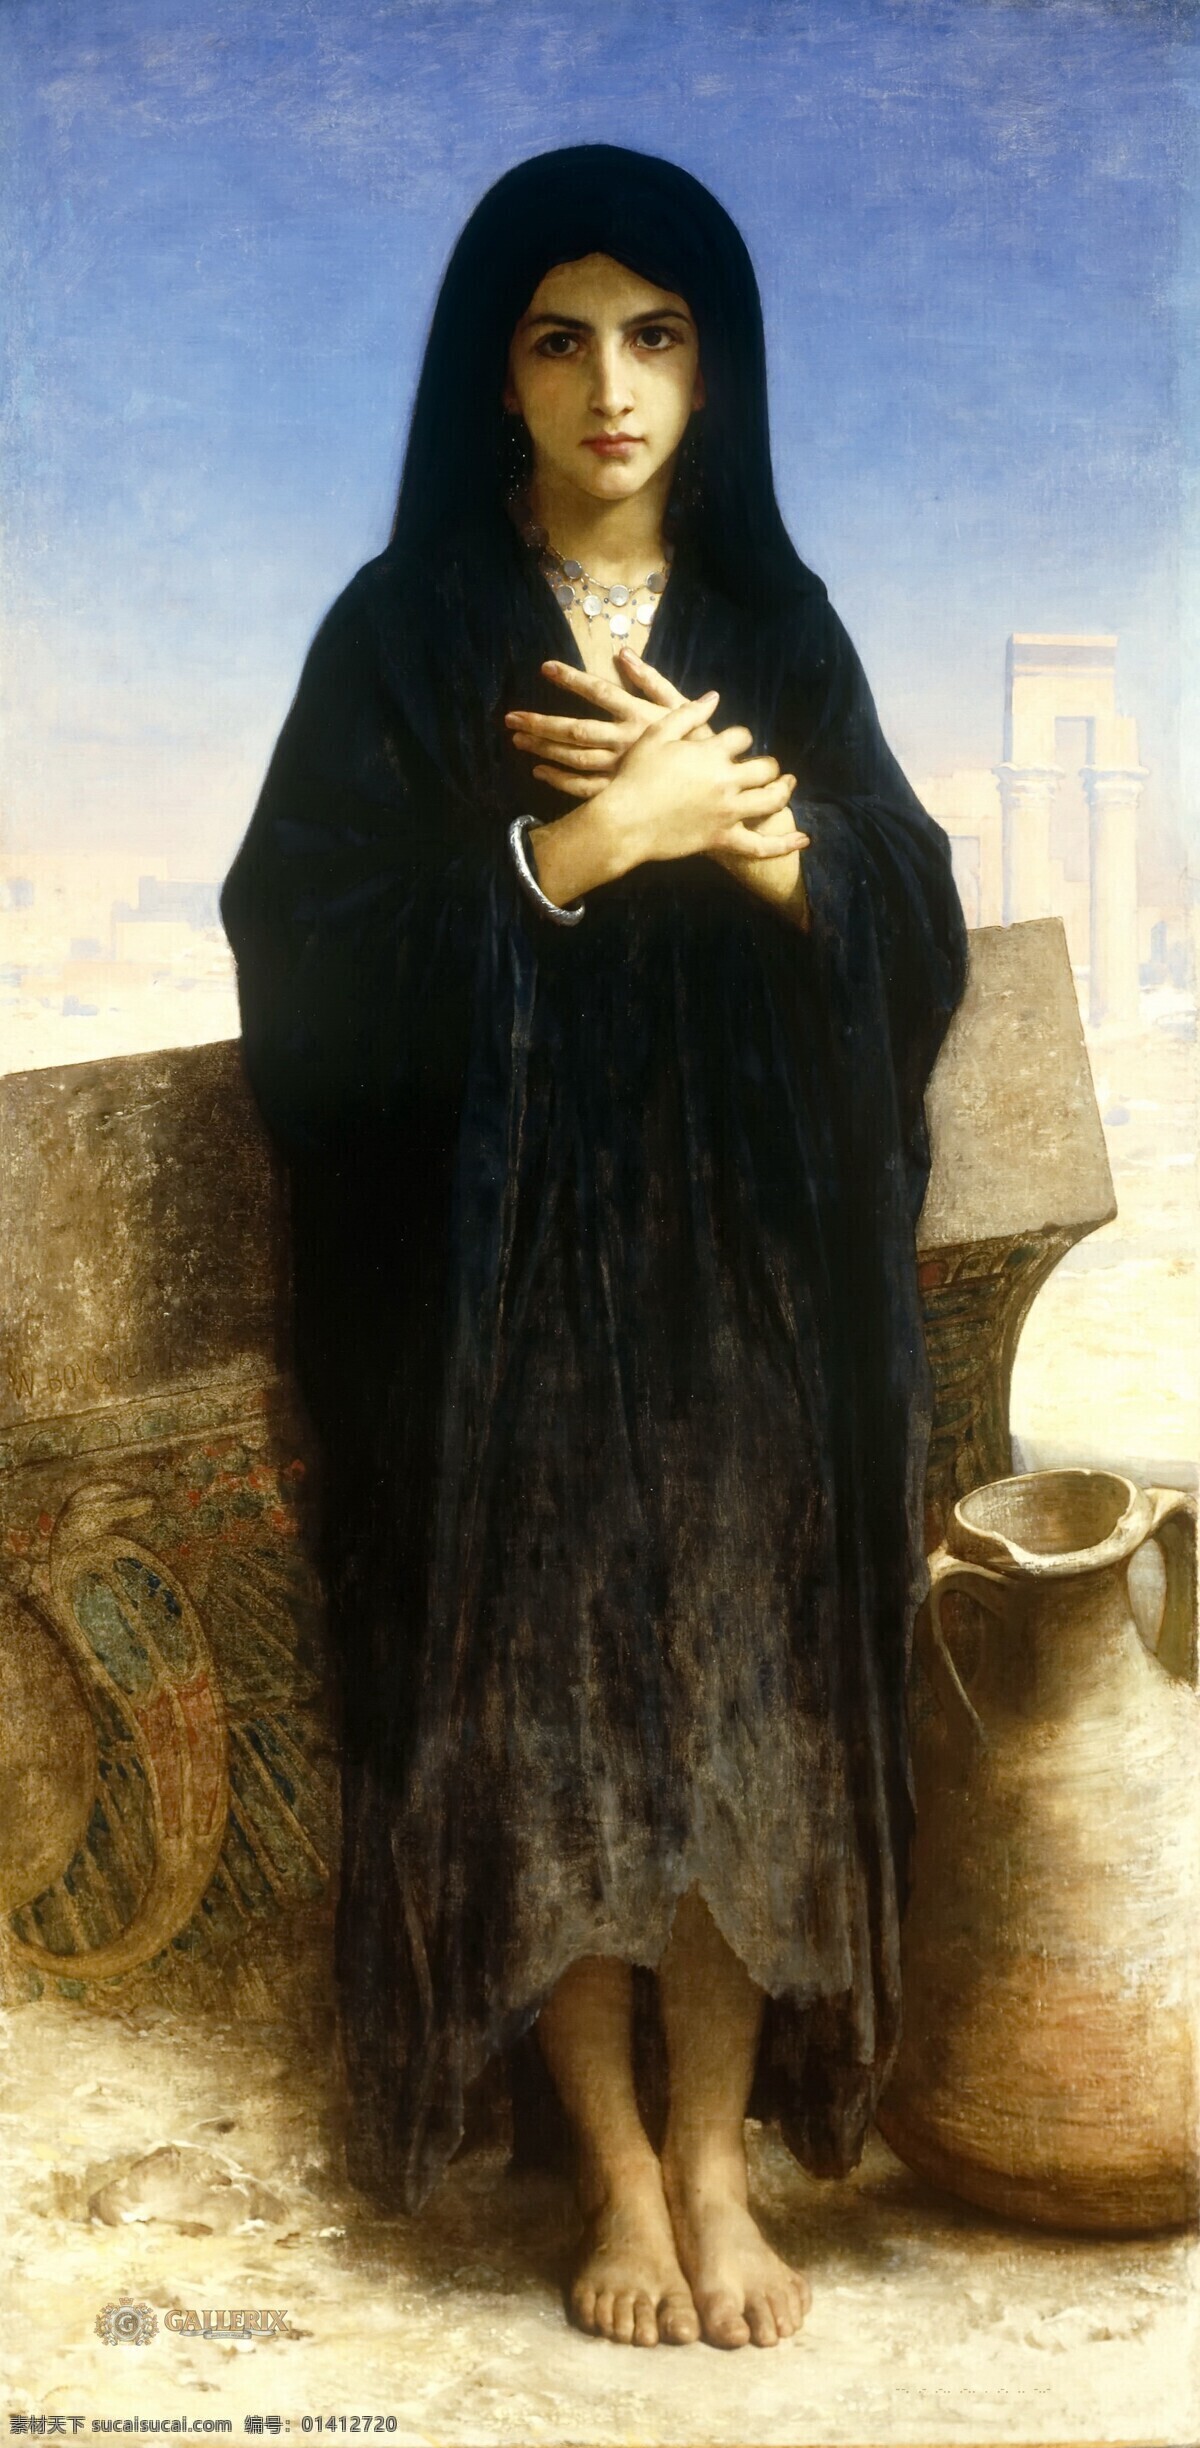 修女肖像画 白俄罗斯 修女肖像 黑色 修女 妇女 贵妇 美女 人物画 肖像画 油画 宗教画 贫民窑 文化艺术 绘画书法